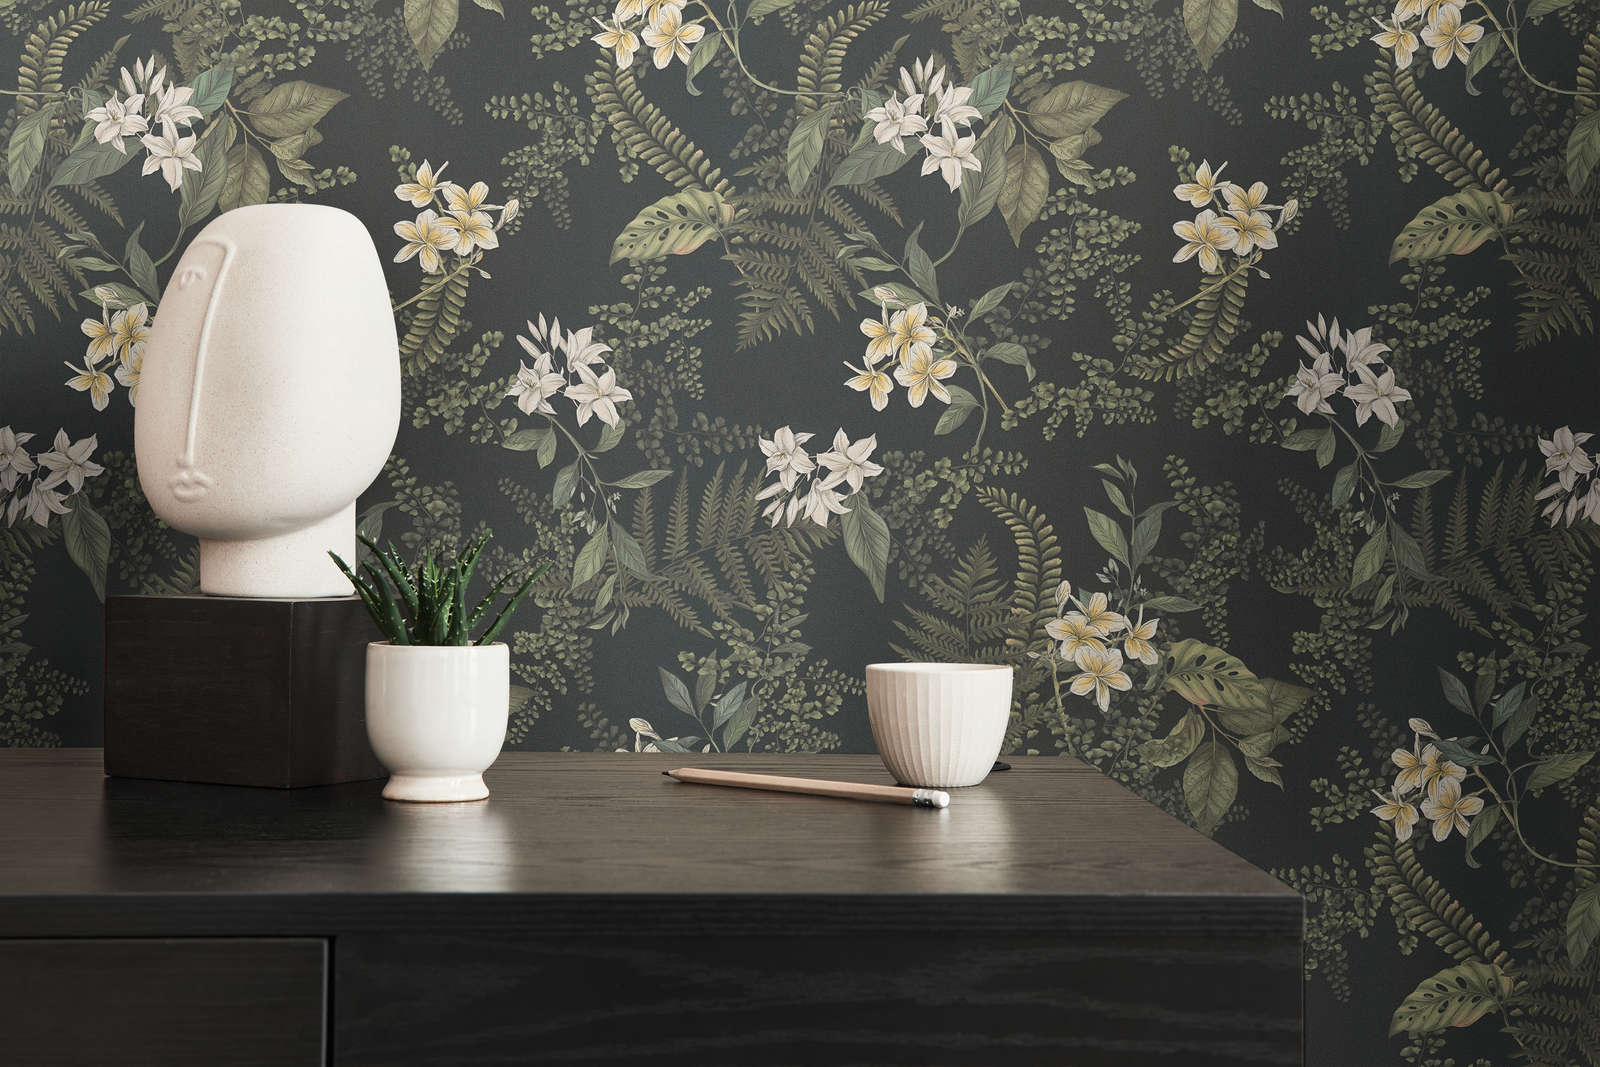             Moderne Tapete floral mit Blüten & Gräsern strukturiert matt – Schwarz, Dunkelgrün, Weiß
        